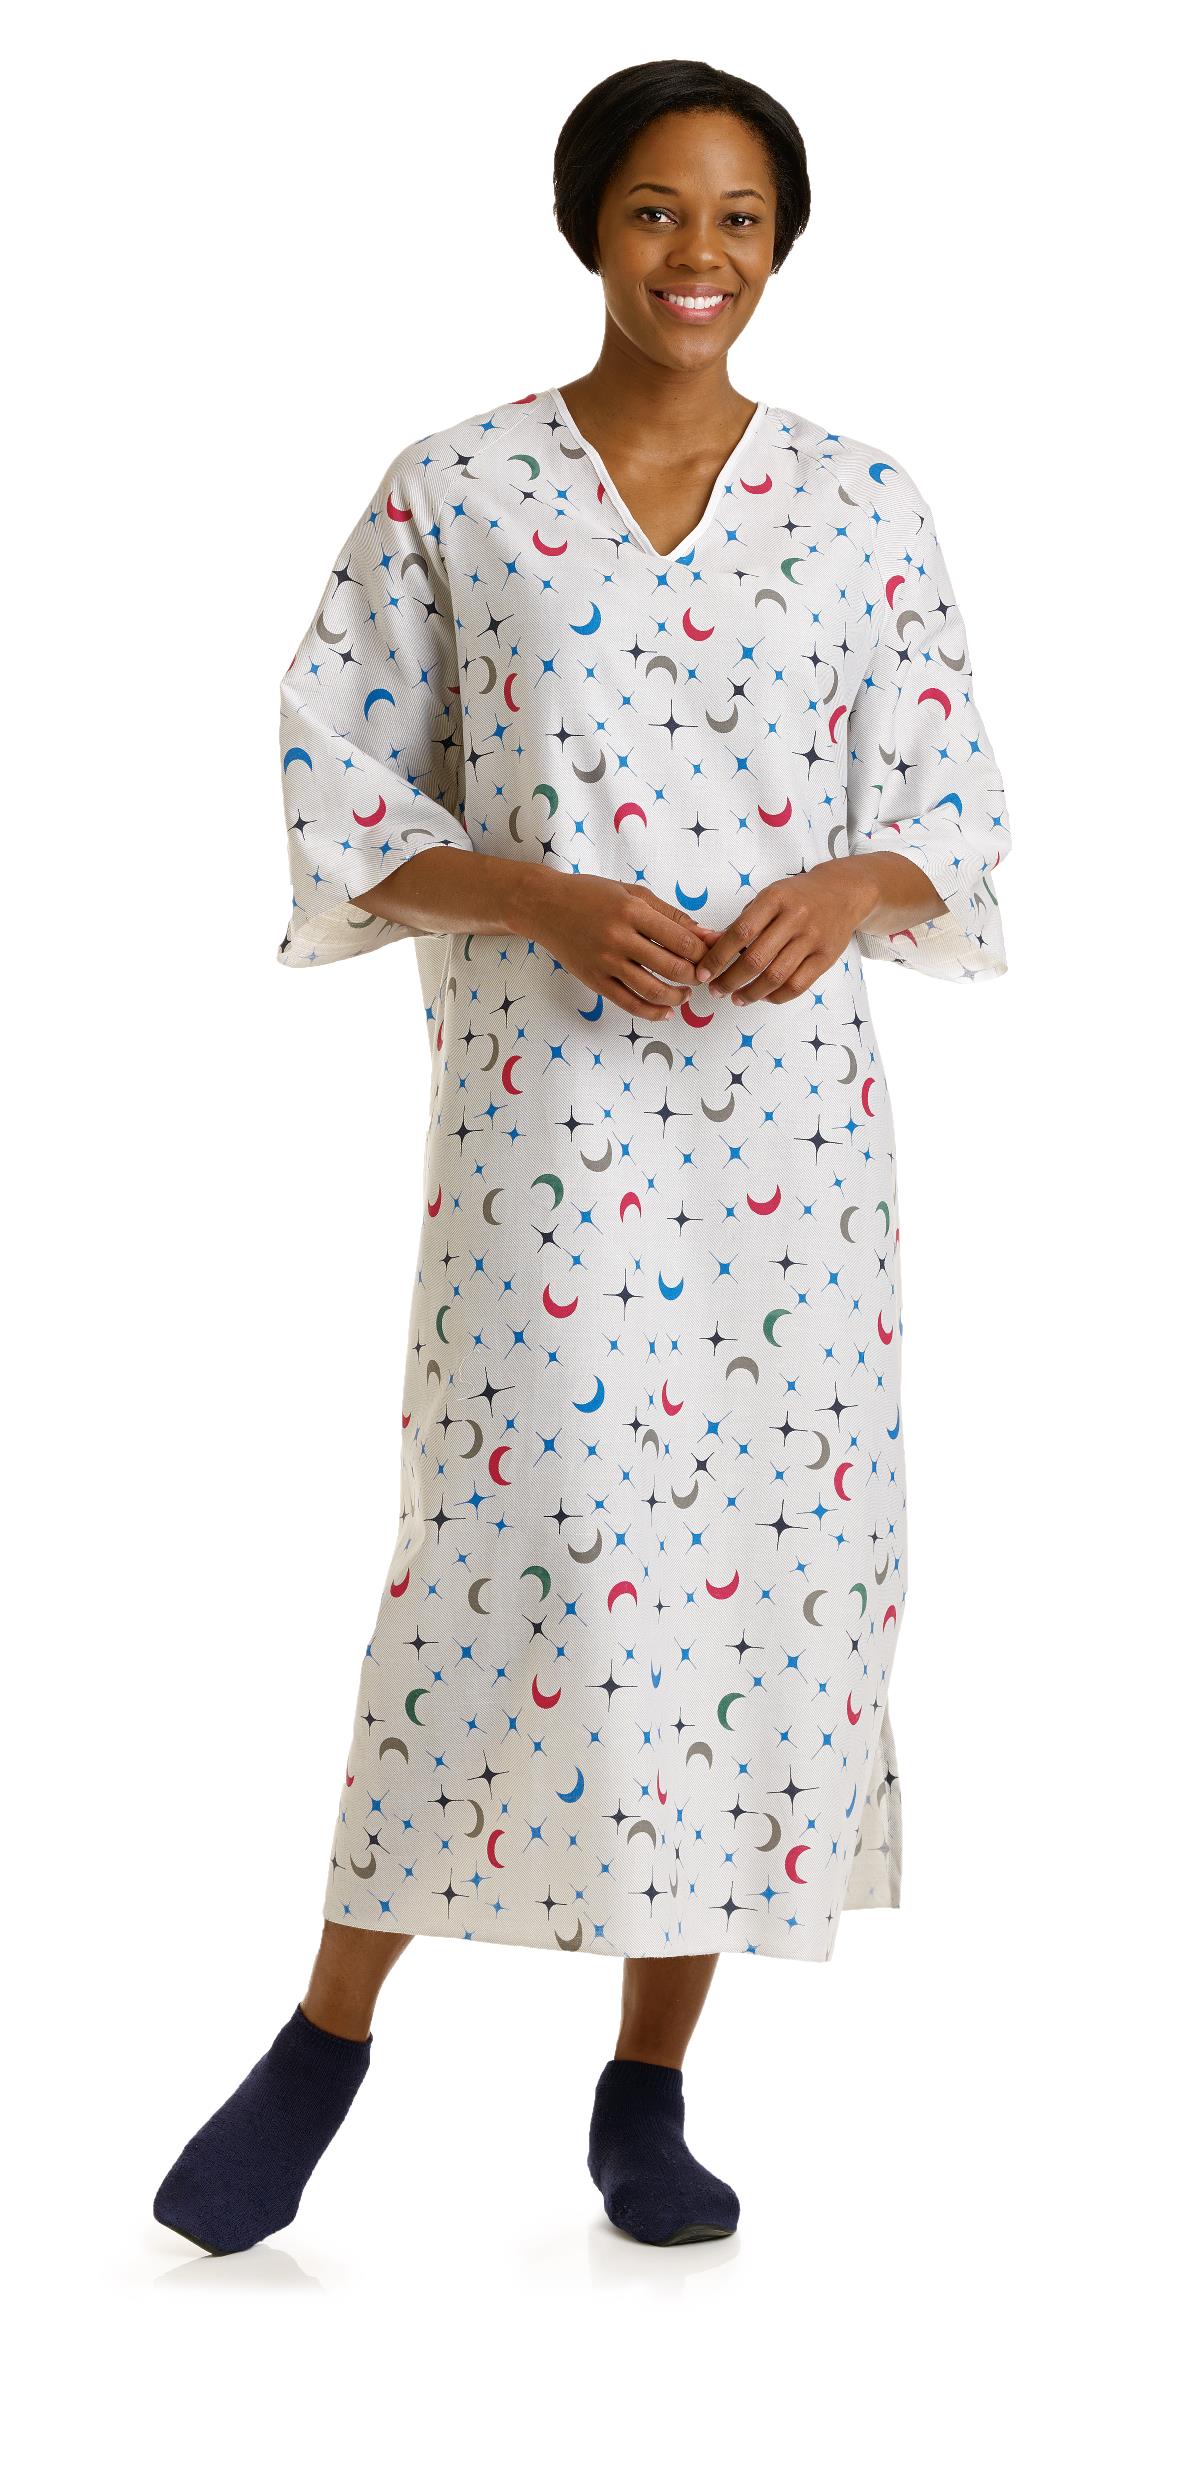 Medline Blended Patient Gowns | Medline Industries, Inc.